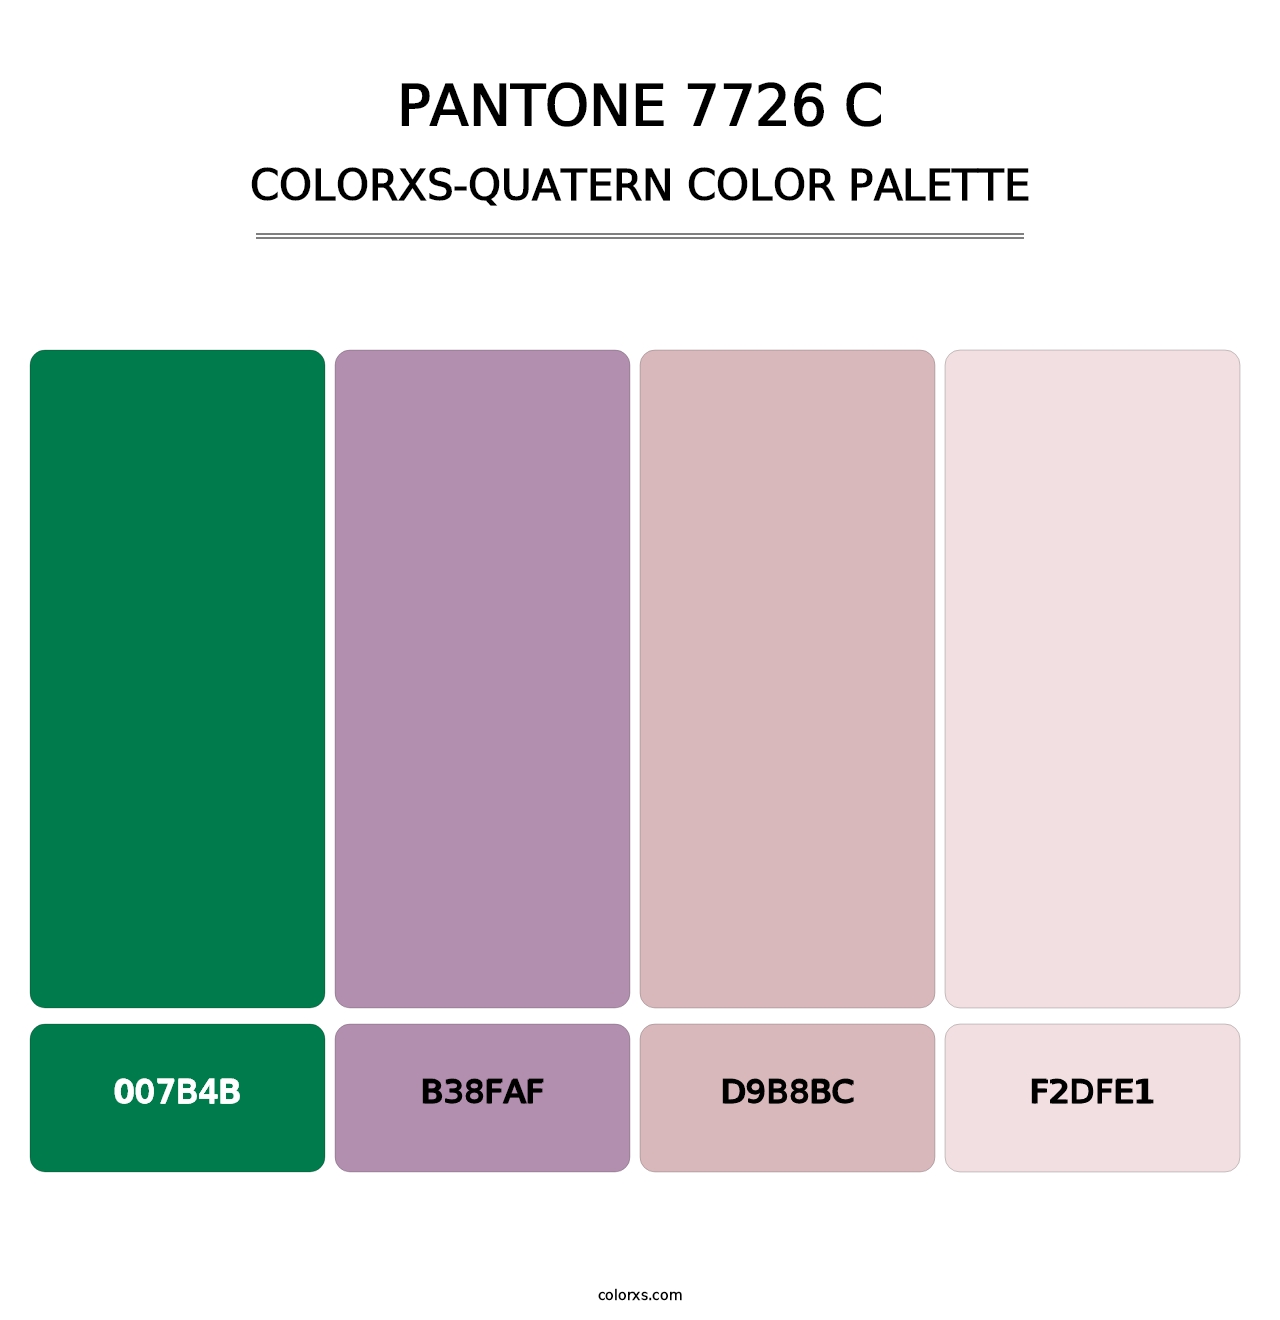 PANTONE 7726 C - Colorxs Quatern Palette